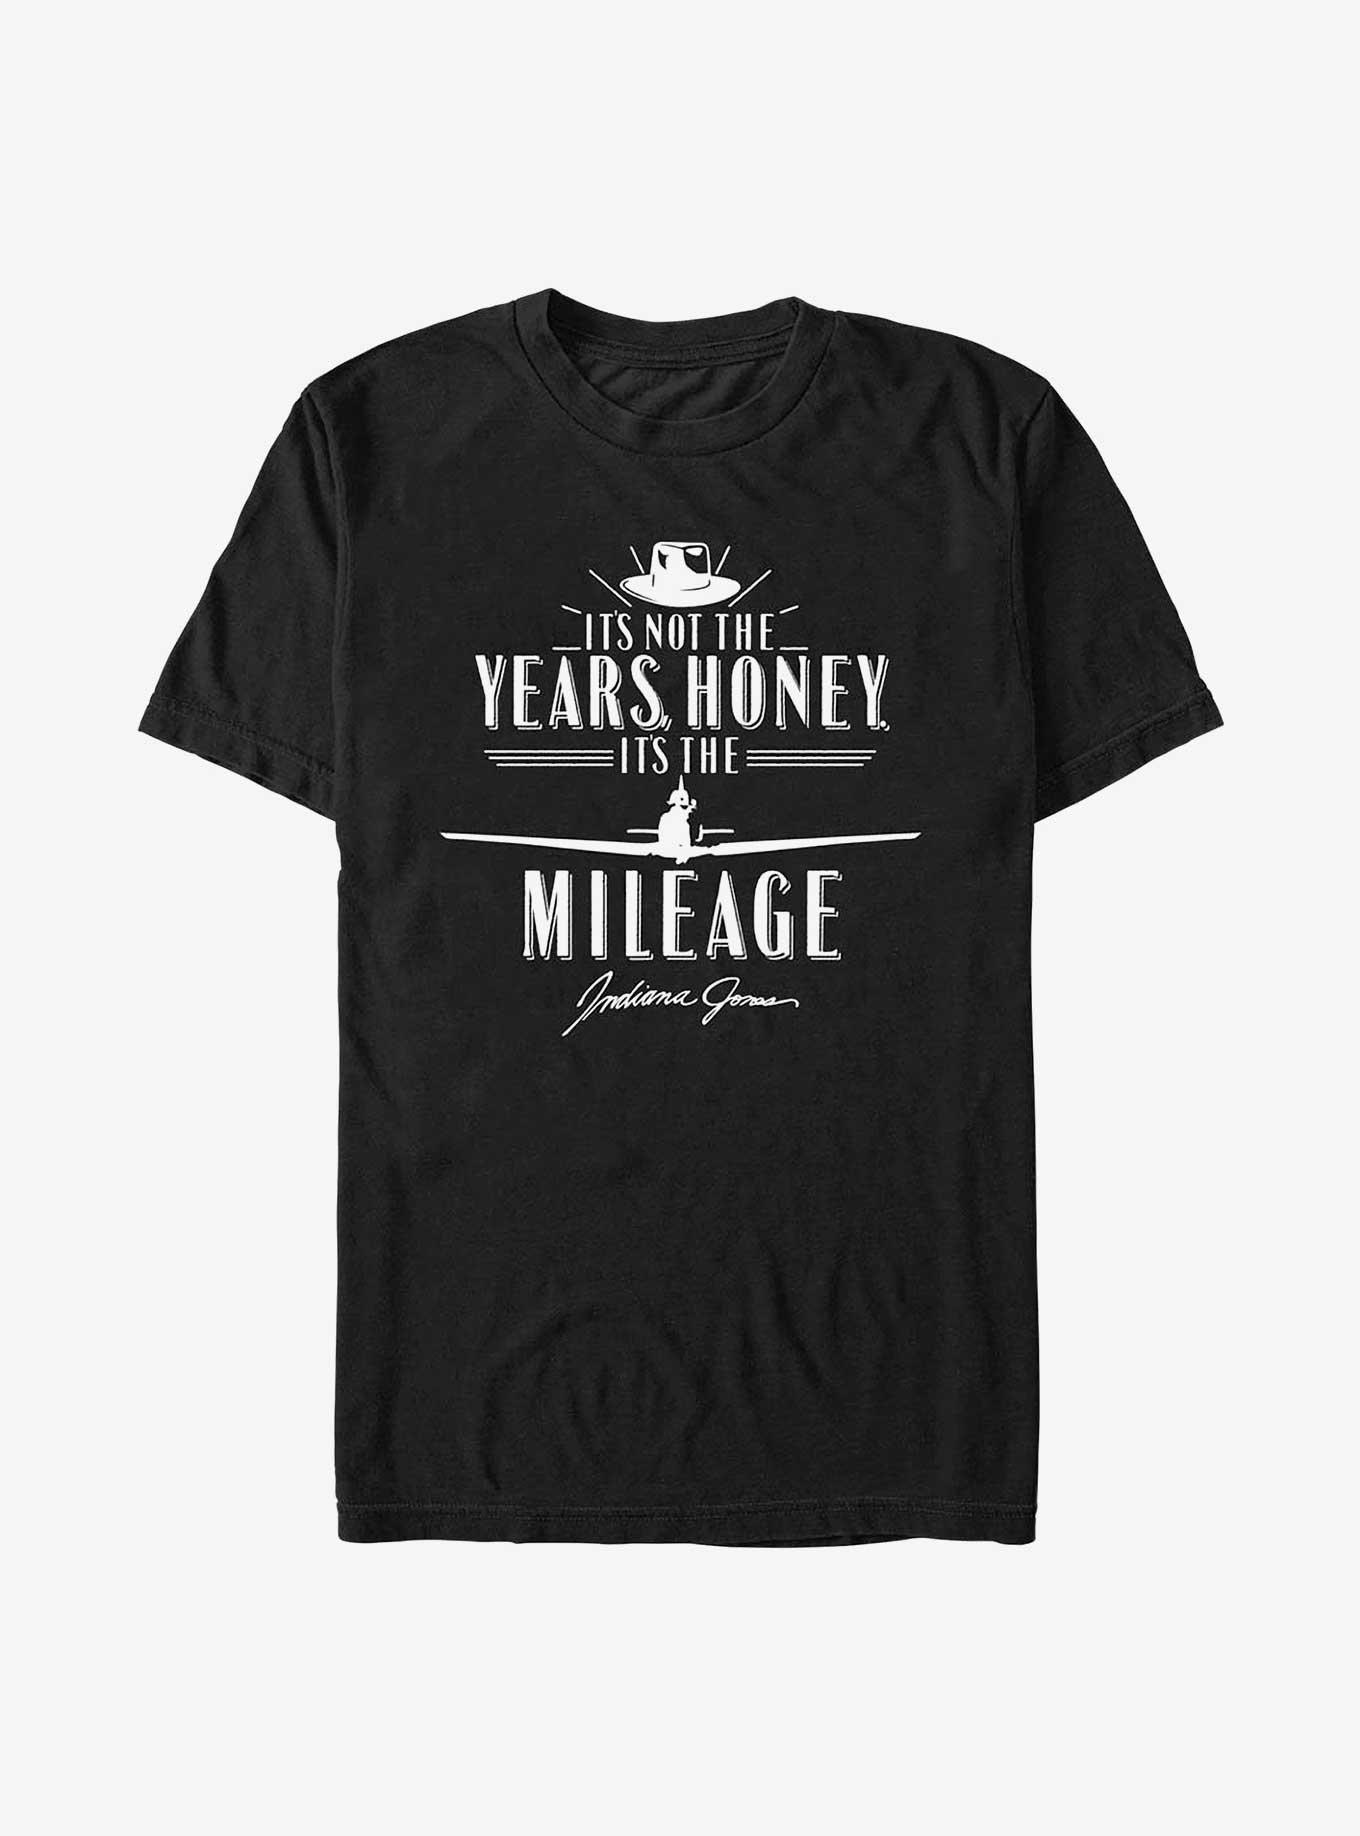 Indiana Jones Its The Mileage T-Shirt, BLACK, hi-res